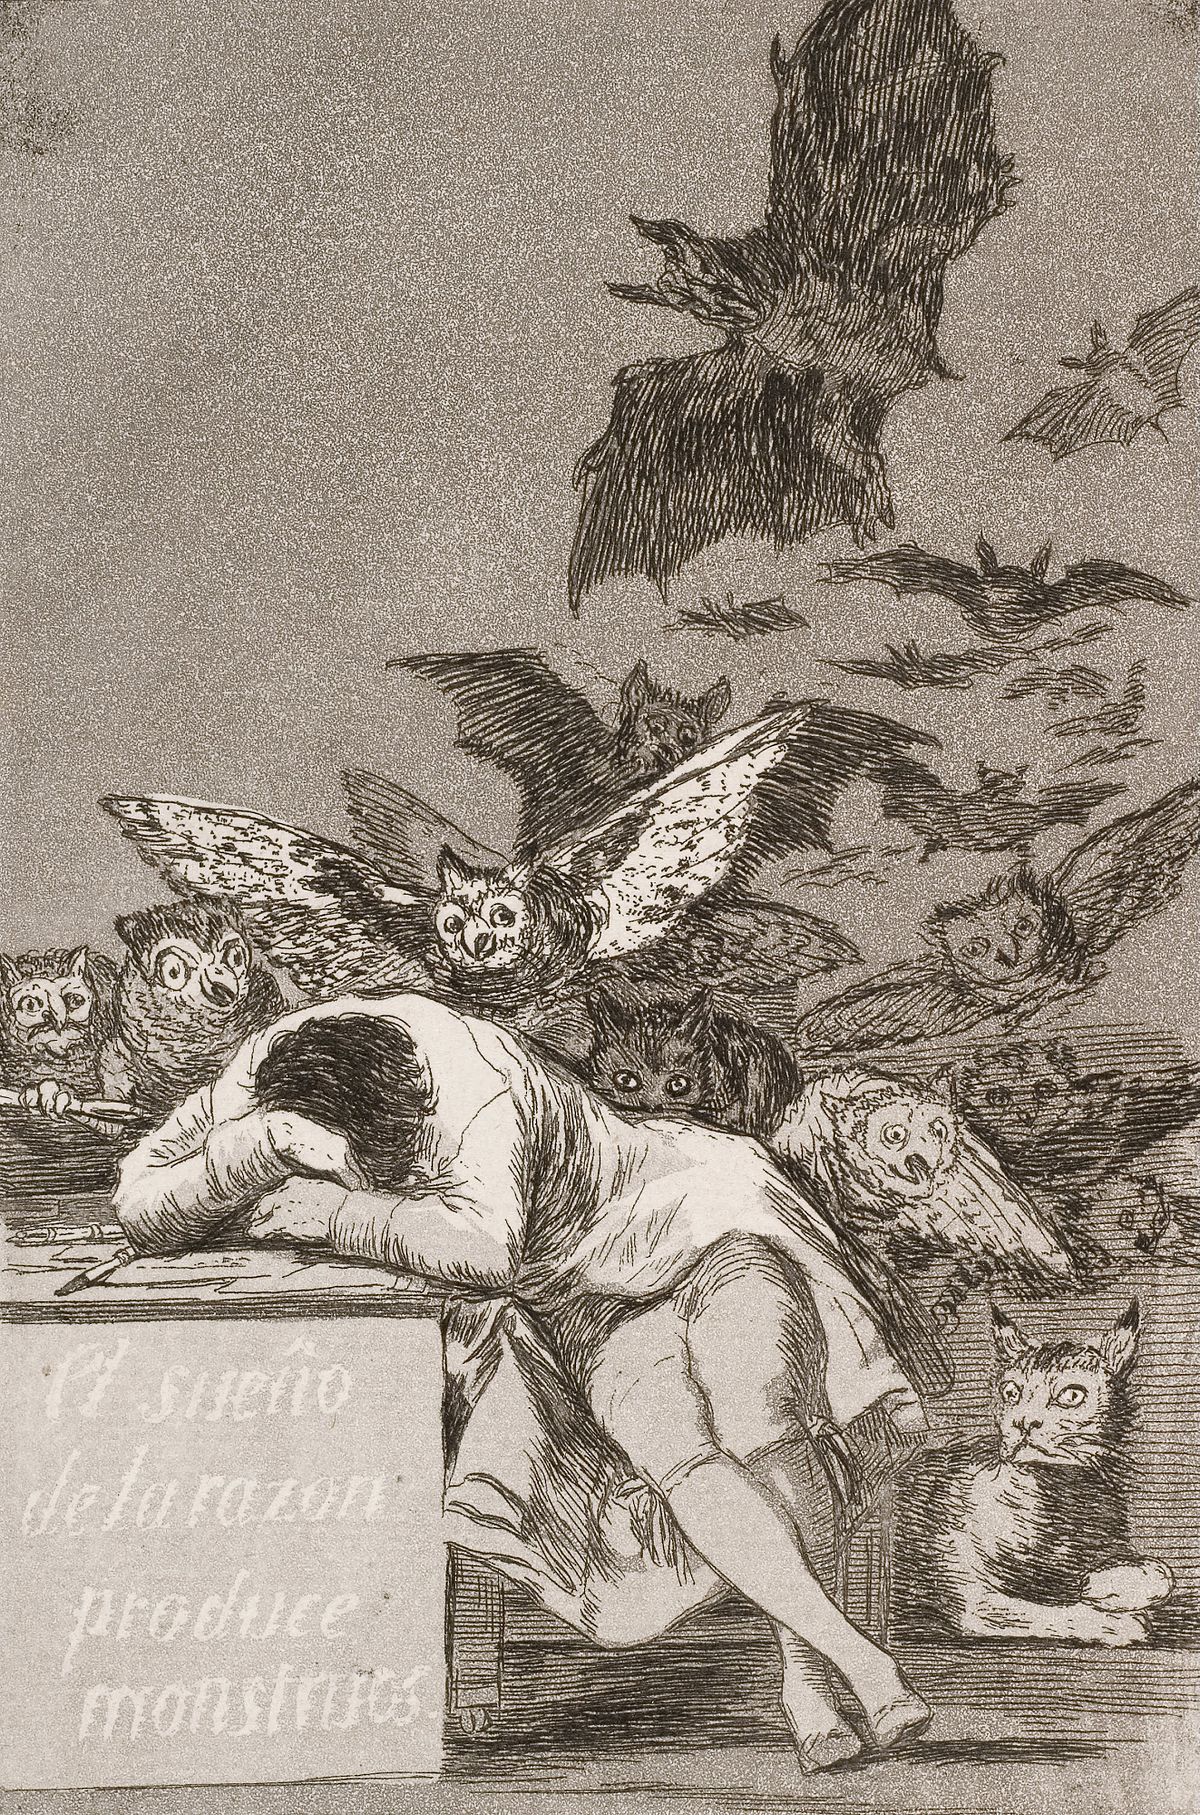 Le sommeil de la raison engendre des monstres  by Francisco Goya - 1799 - 21.6 x 15.2 cm collection privée